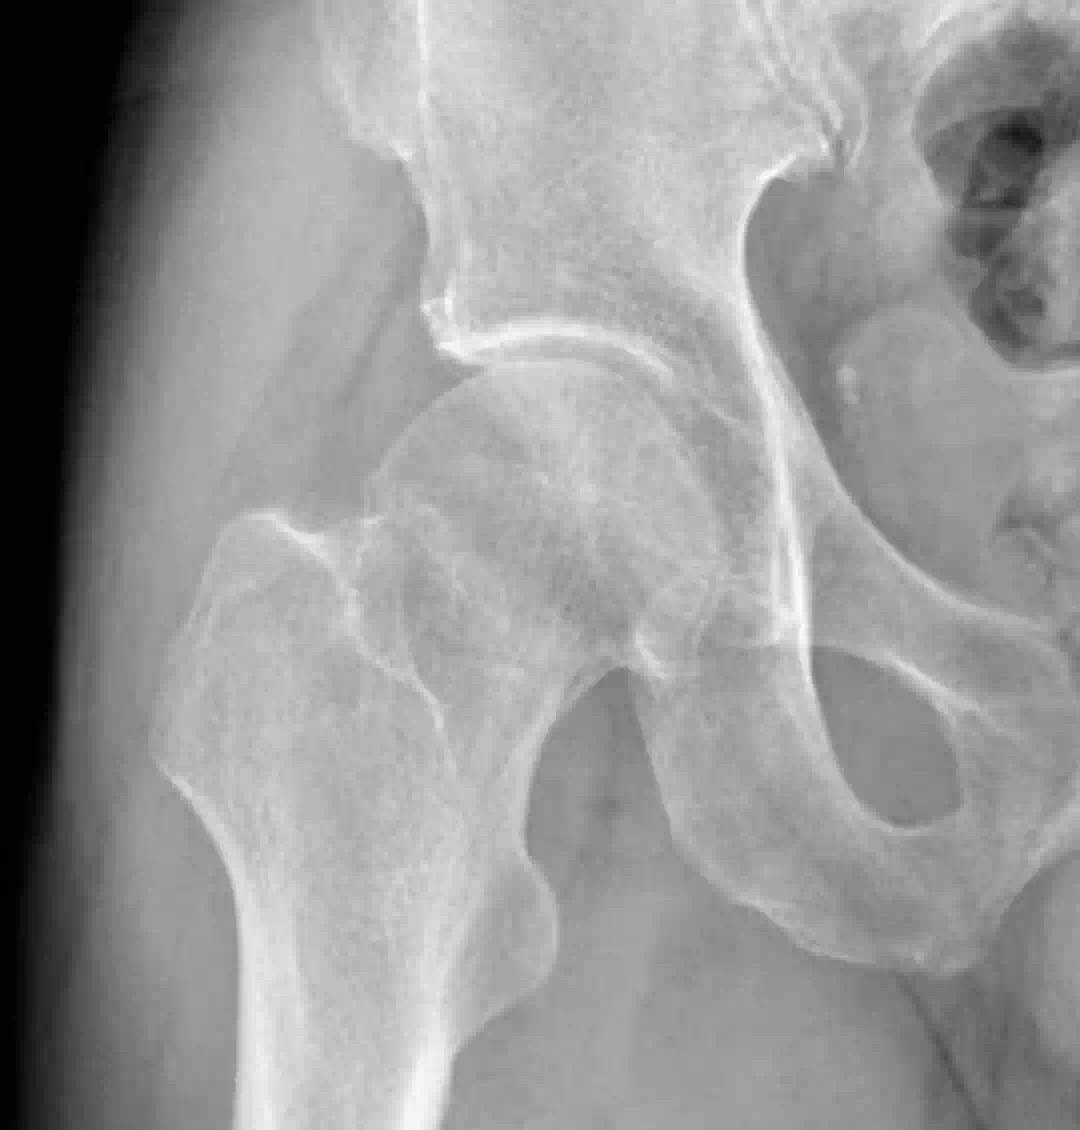 长春骨伤医院顺利为 84 岁高龄老人完成「左侧股骨粗隆间骨折闭合复位内固定手术」-医院汇-丁香园